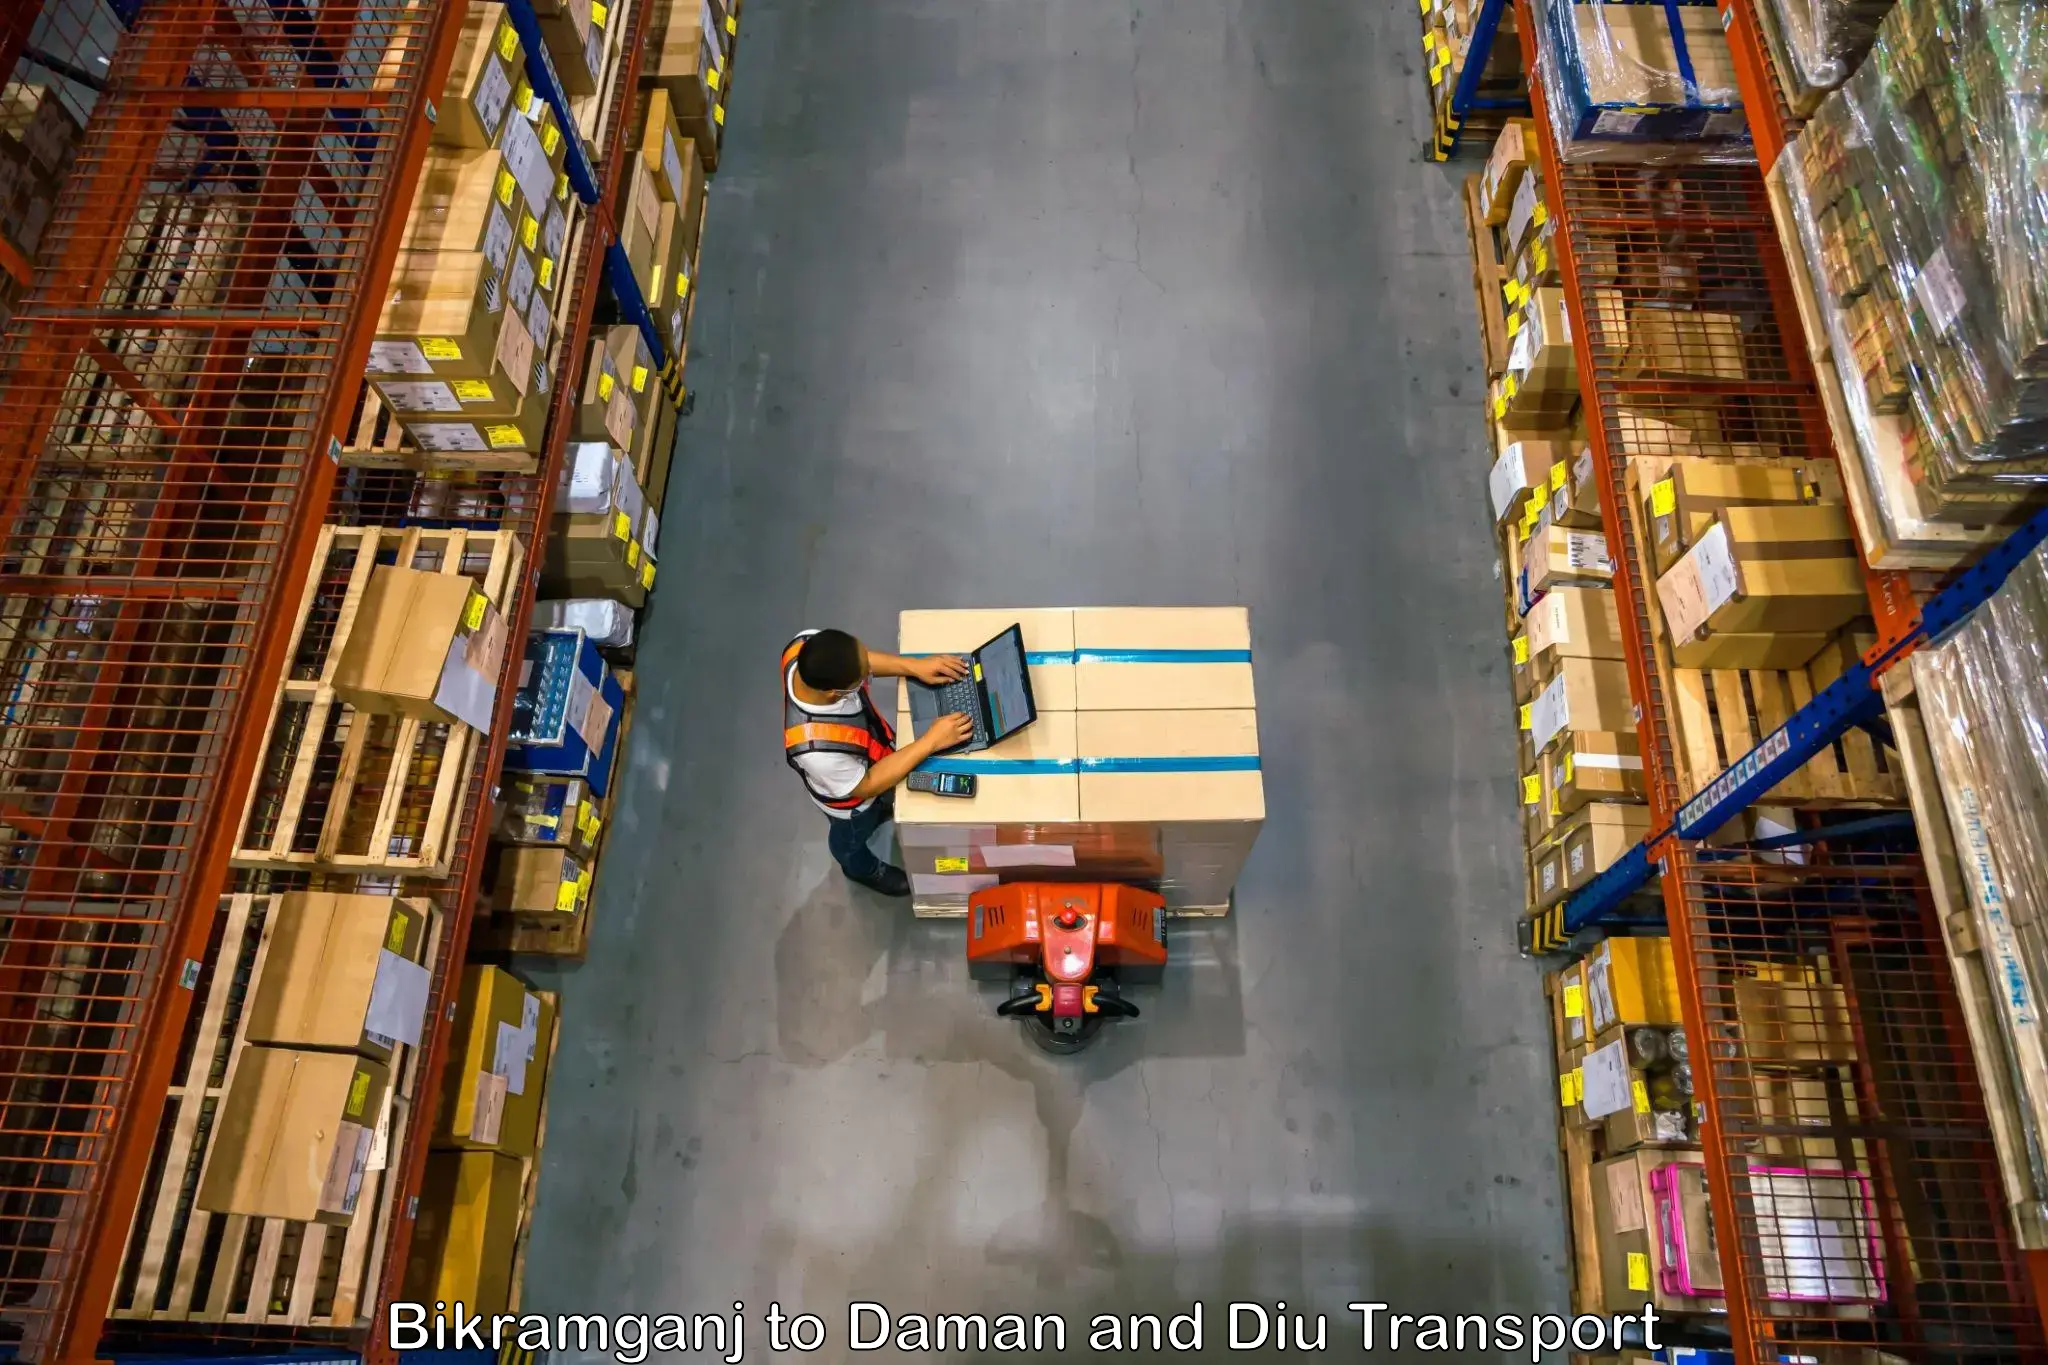 Package delivery services Bikramganj to Daman